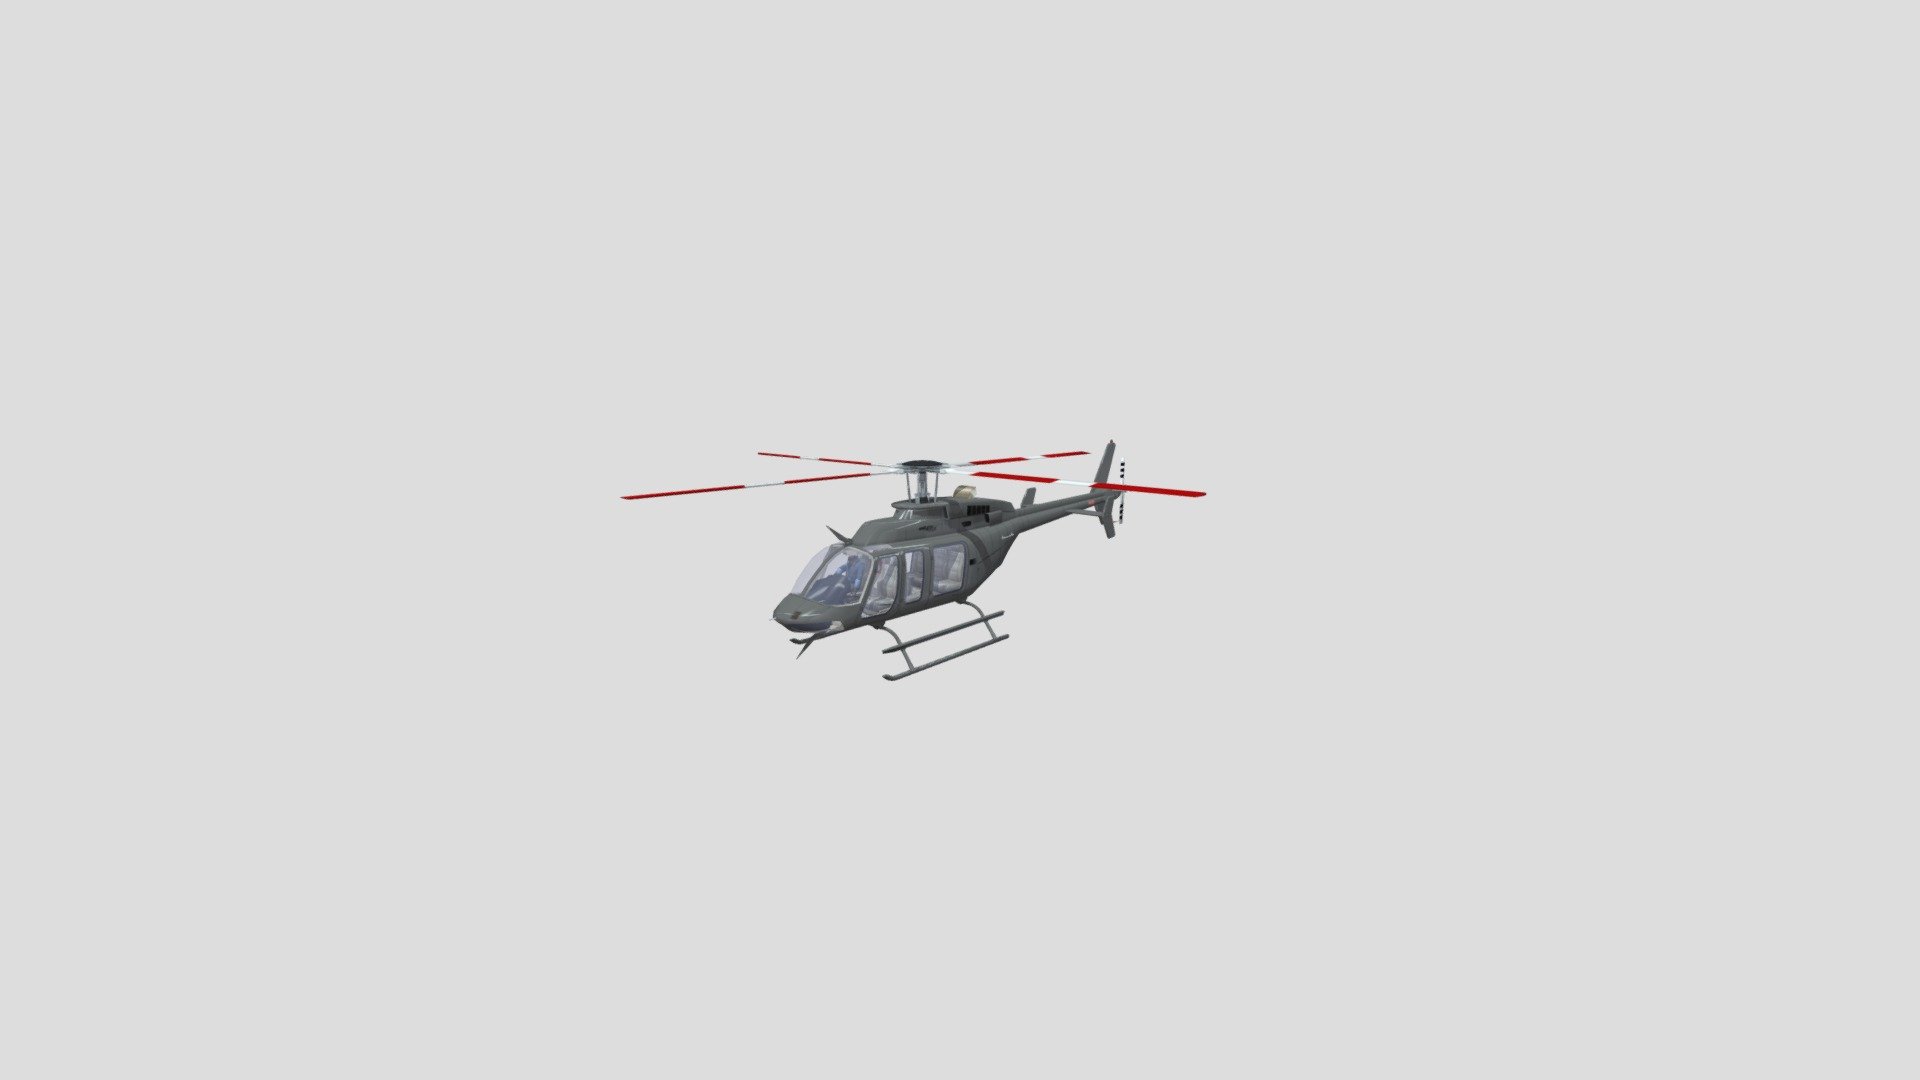 3d model of Bell 407 GX for flight simulatro (trainer) - Bell 407 GX - 3D model by maxtsovma 3d model